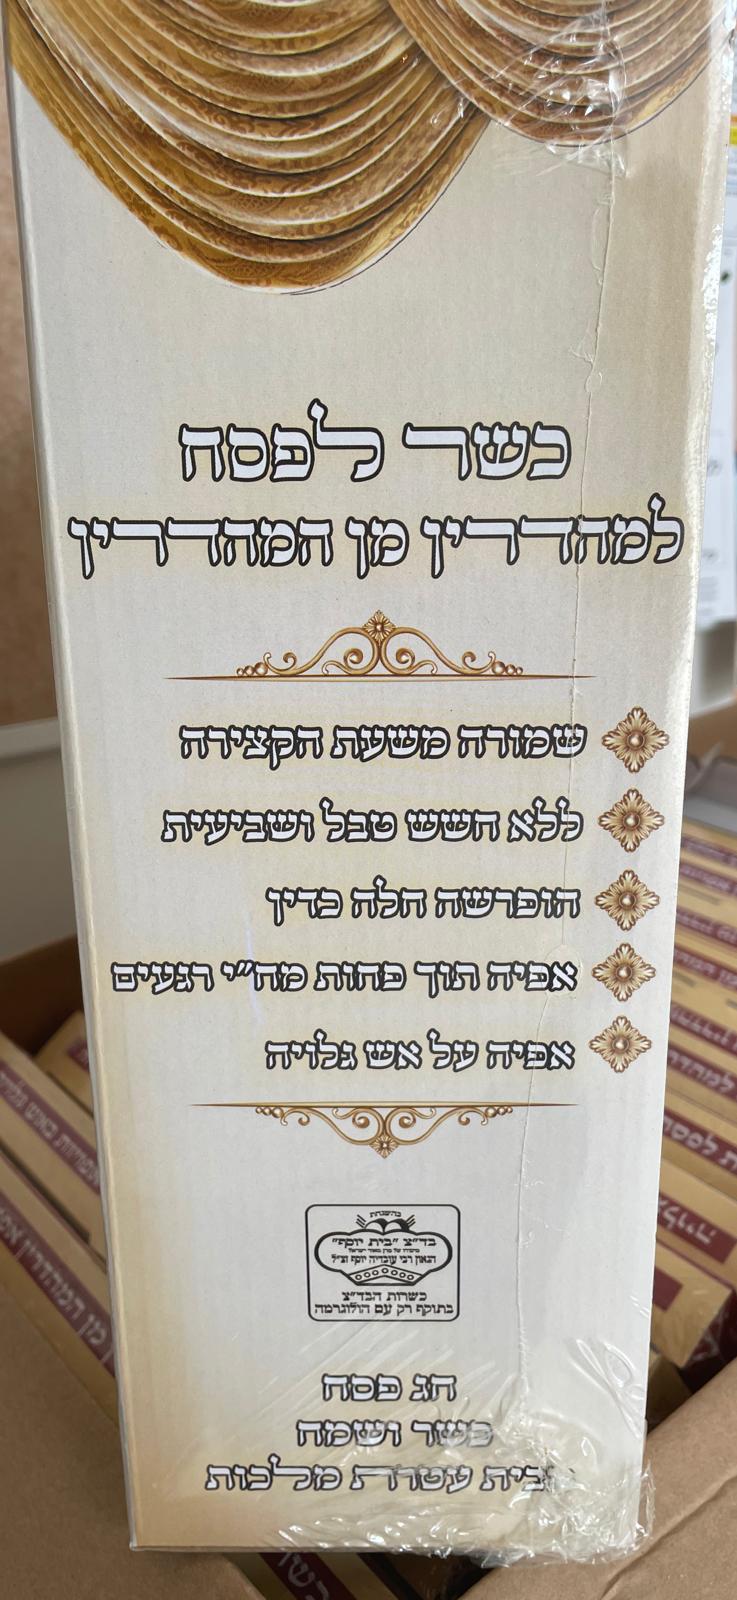 שלהבת לייט - קמח מצה - כשר לפסח - תפארת המצות - בית יוסף